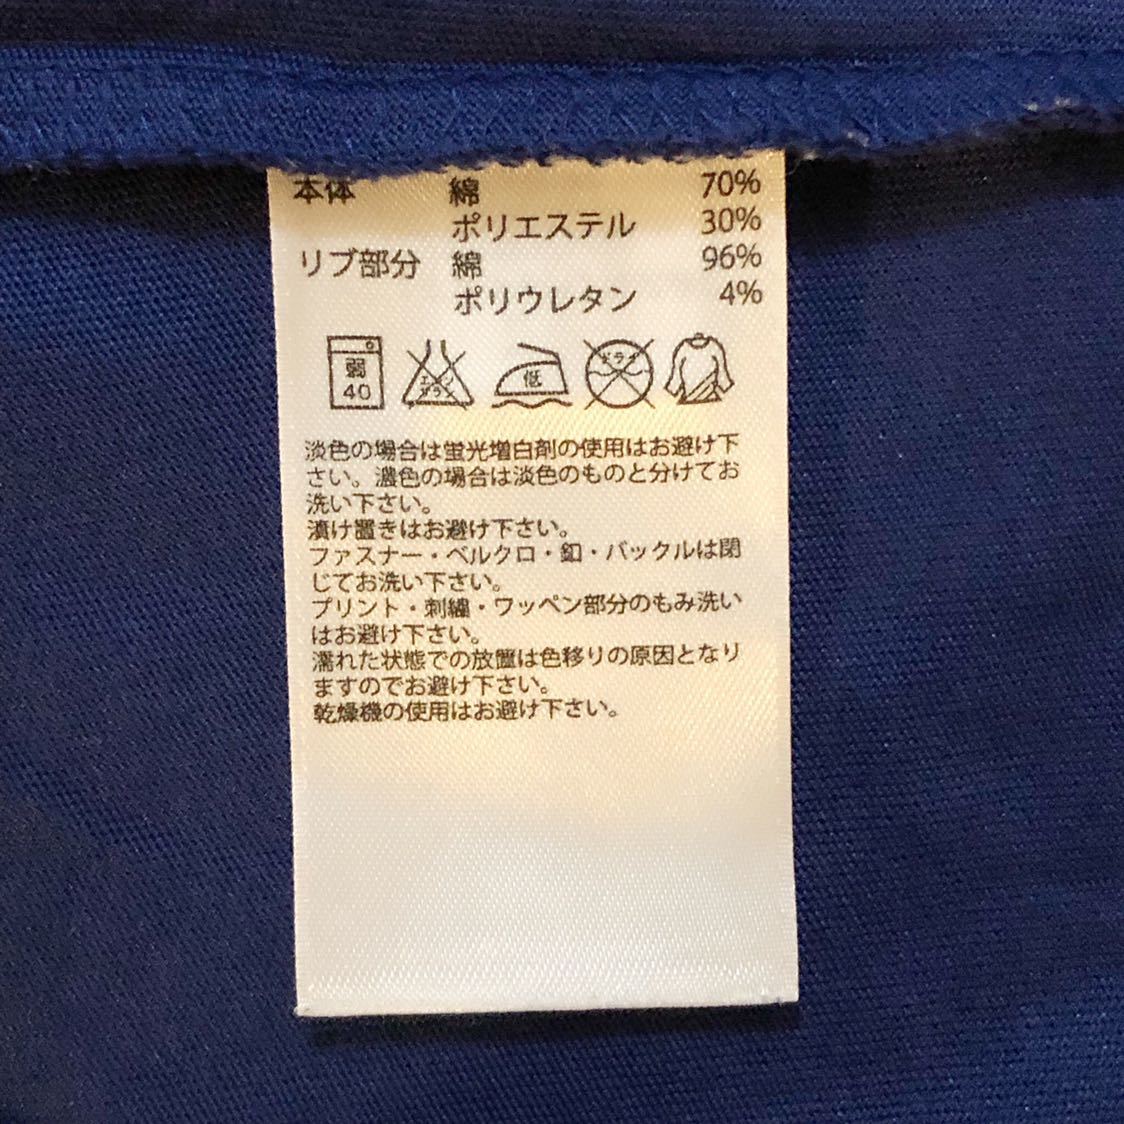 【送料無料】adidas アディダス★パフォーマンスロゴ 半袖Tシャツ ネイビー 紺